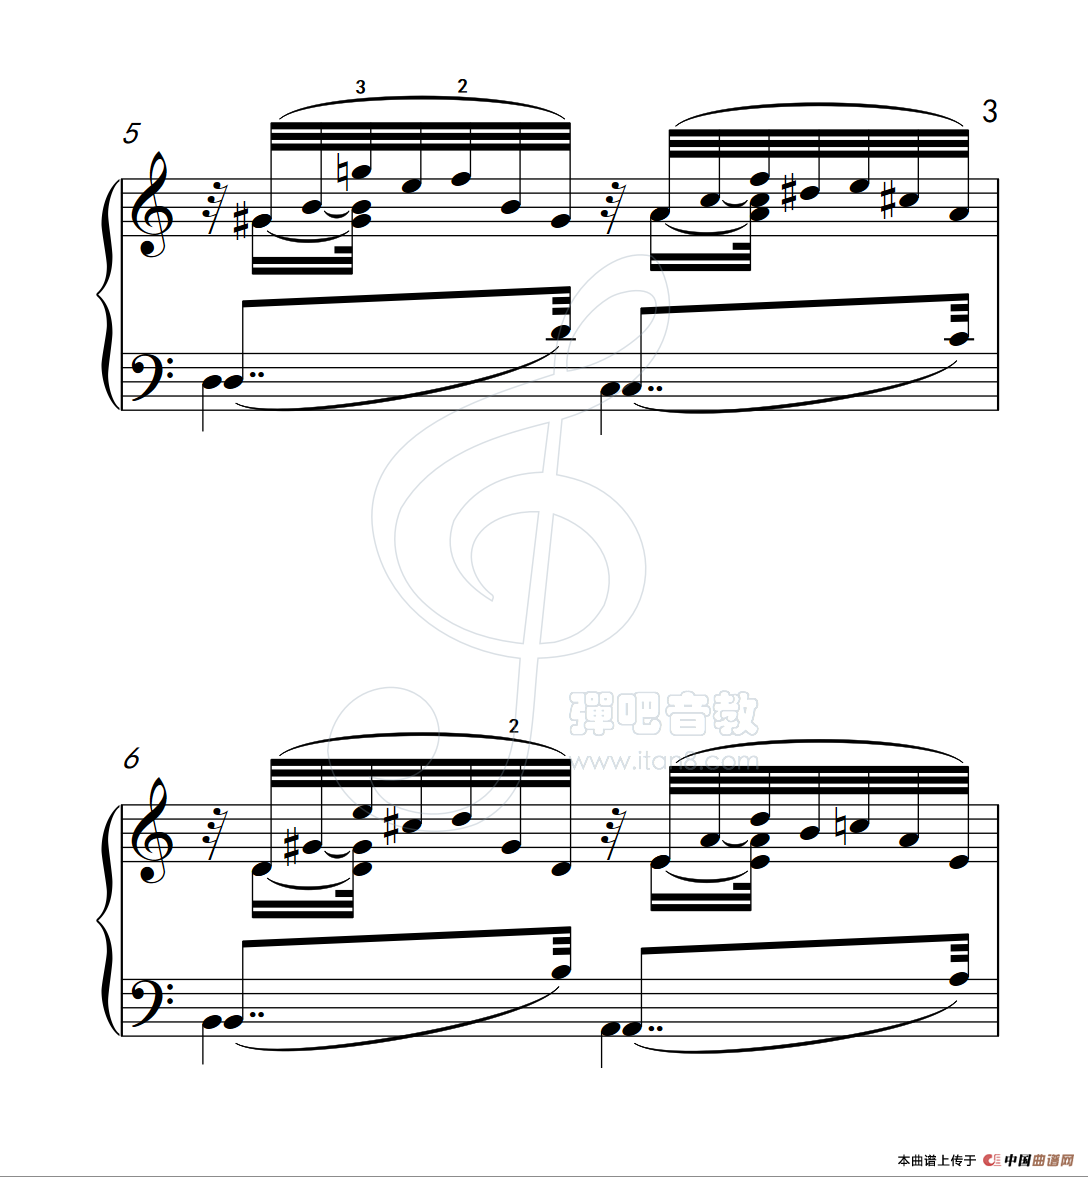 《练习曲 36》钢琴曲谱图分享